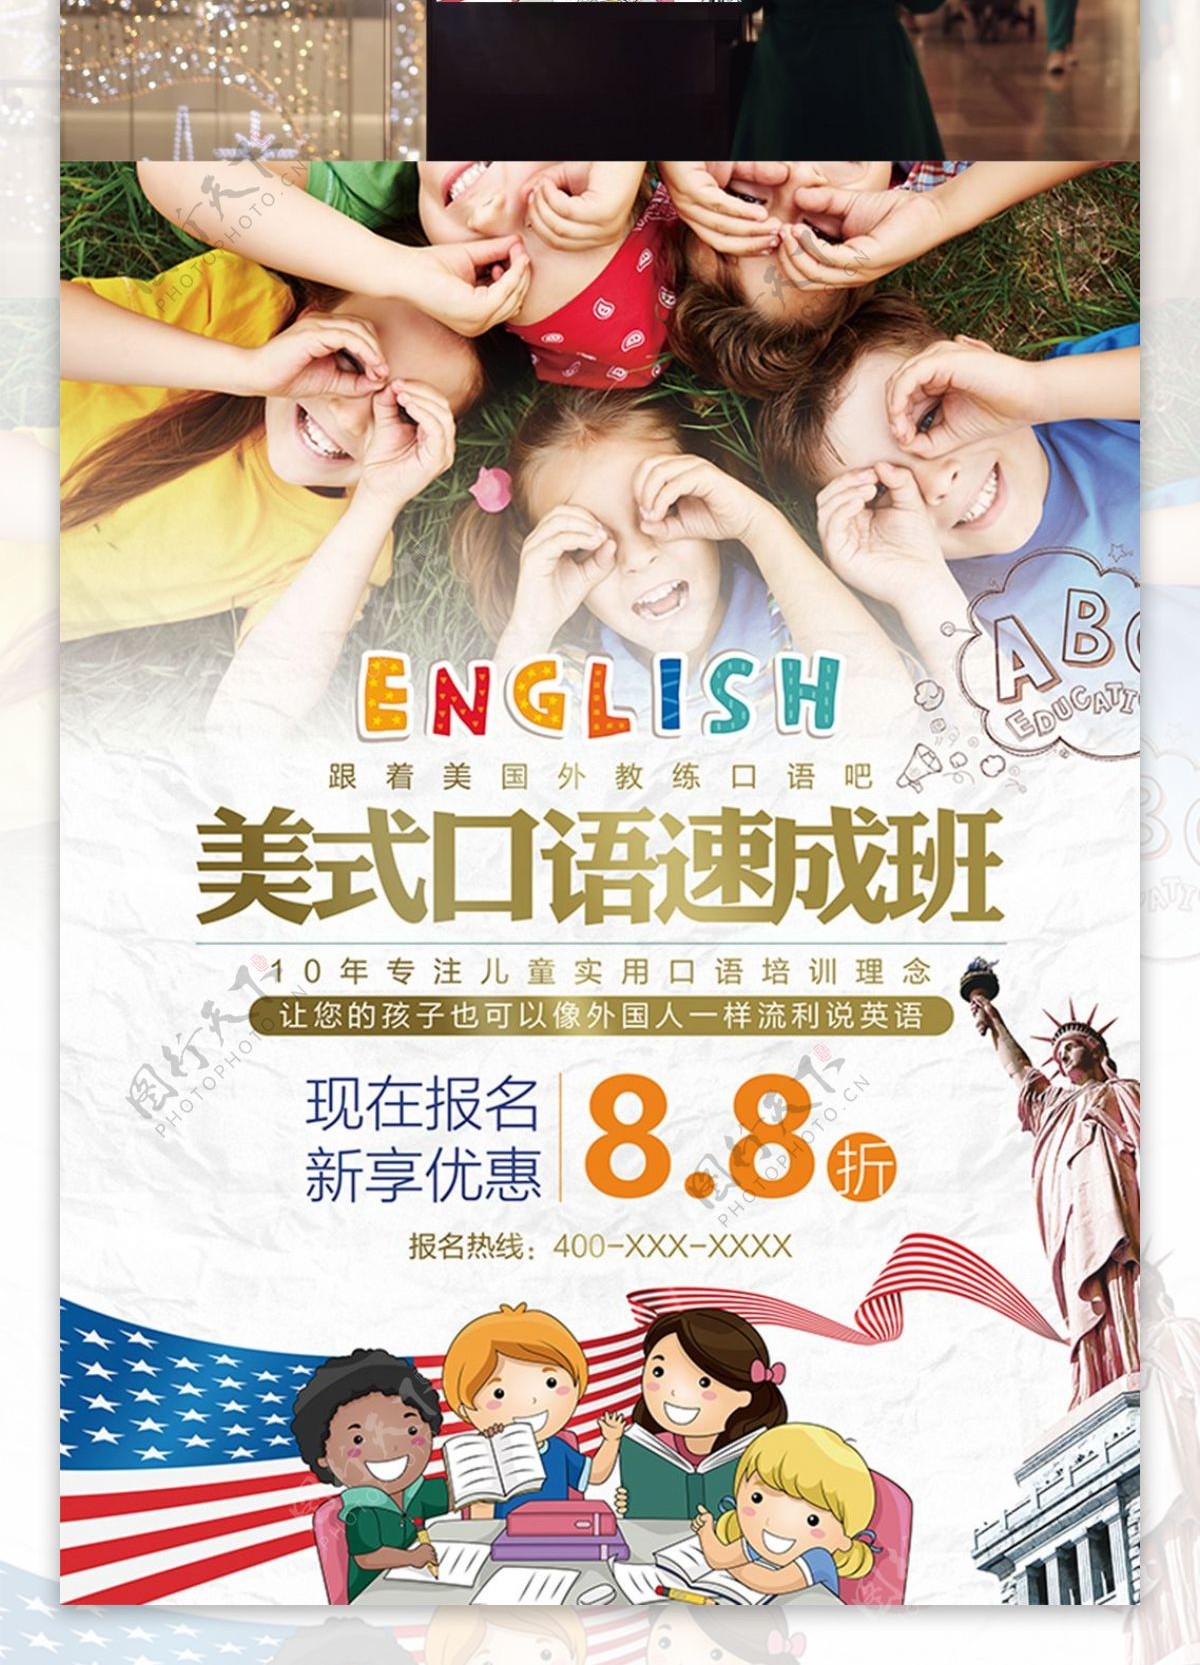 英语口语培训班招生促销海报